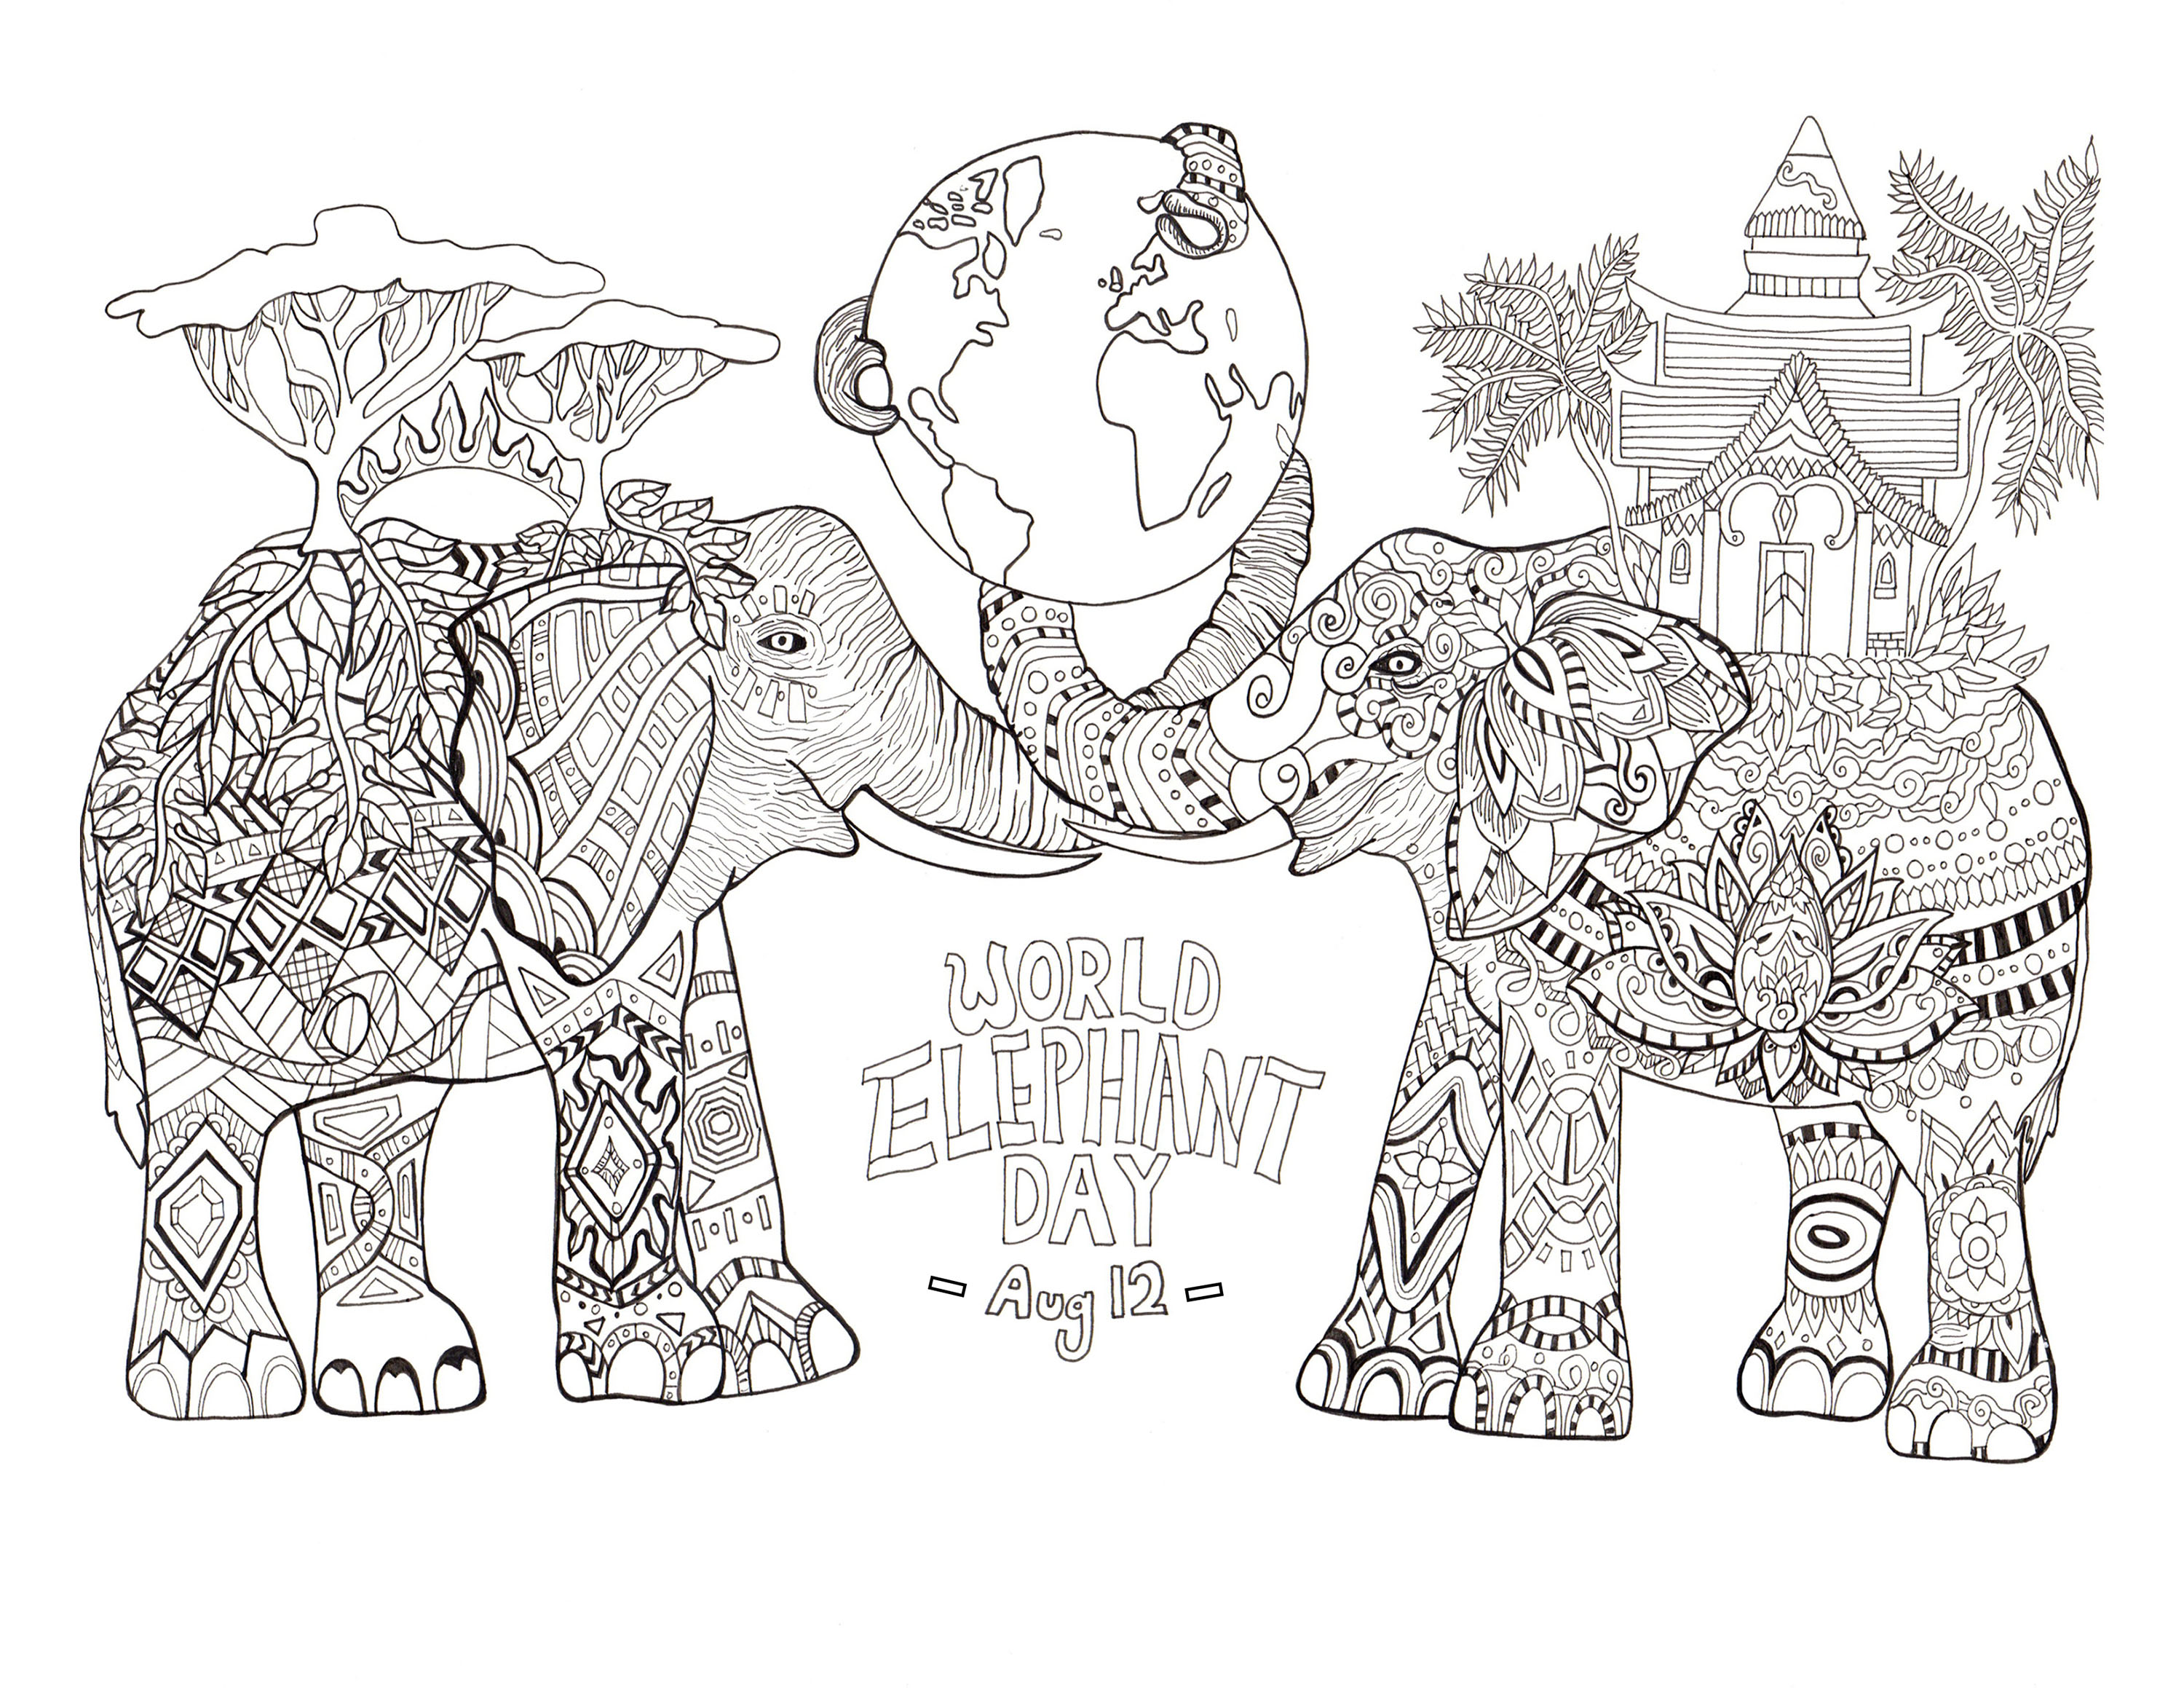 Giornata mondiale dell'elefante. Colorare per la Giornata mondiale degli elefanti (12 agosto)